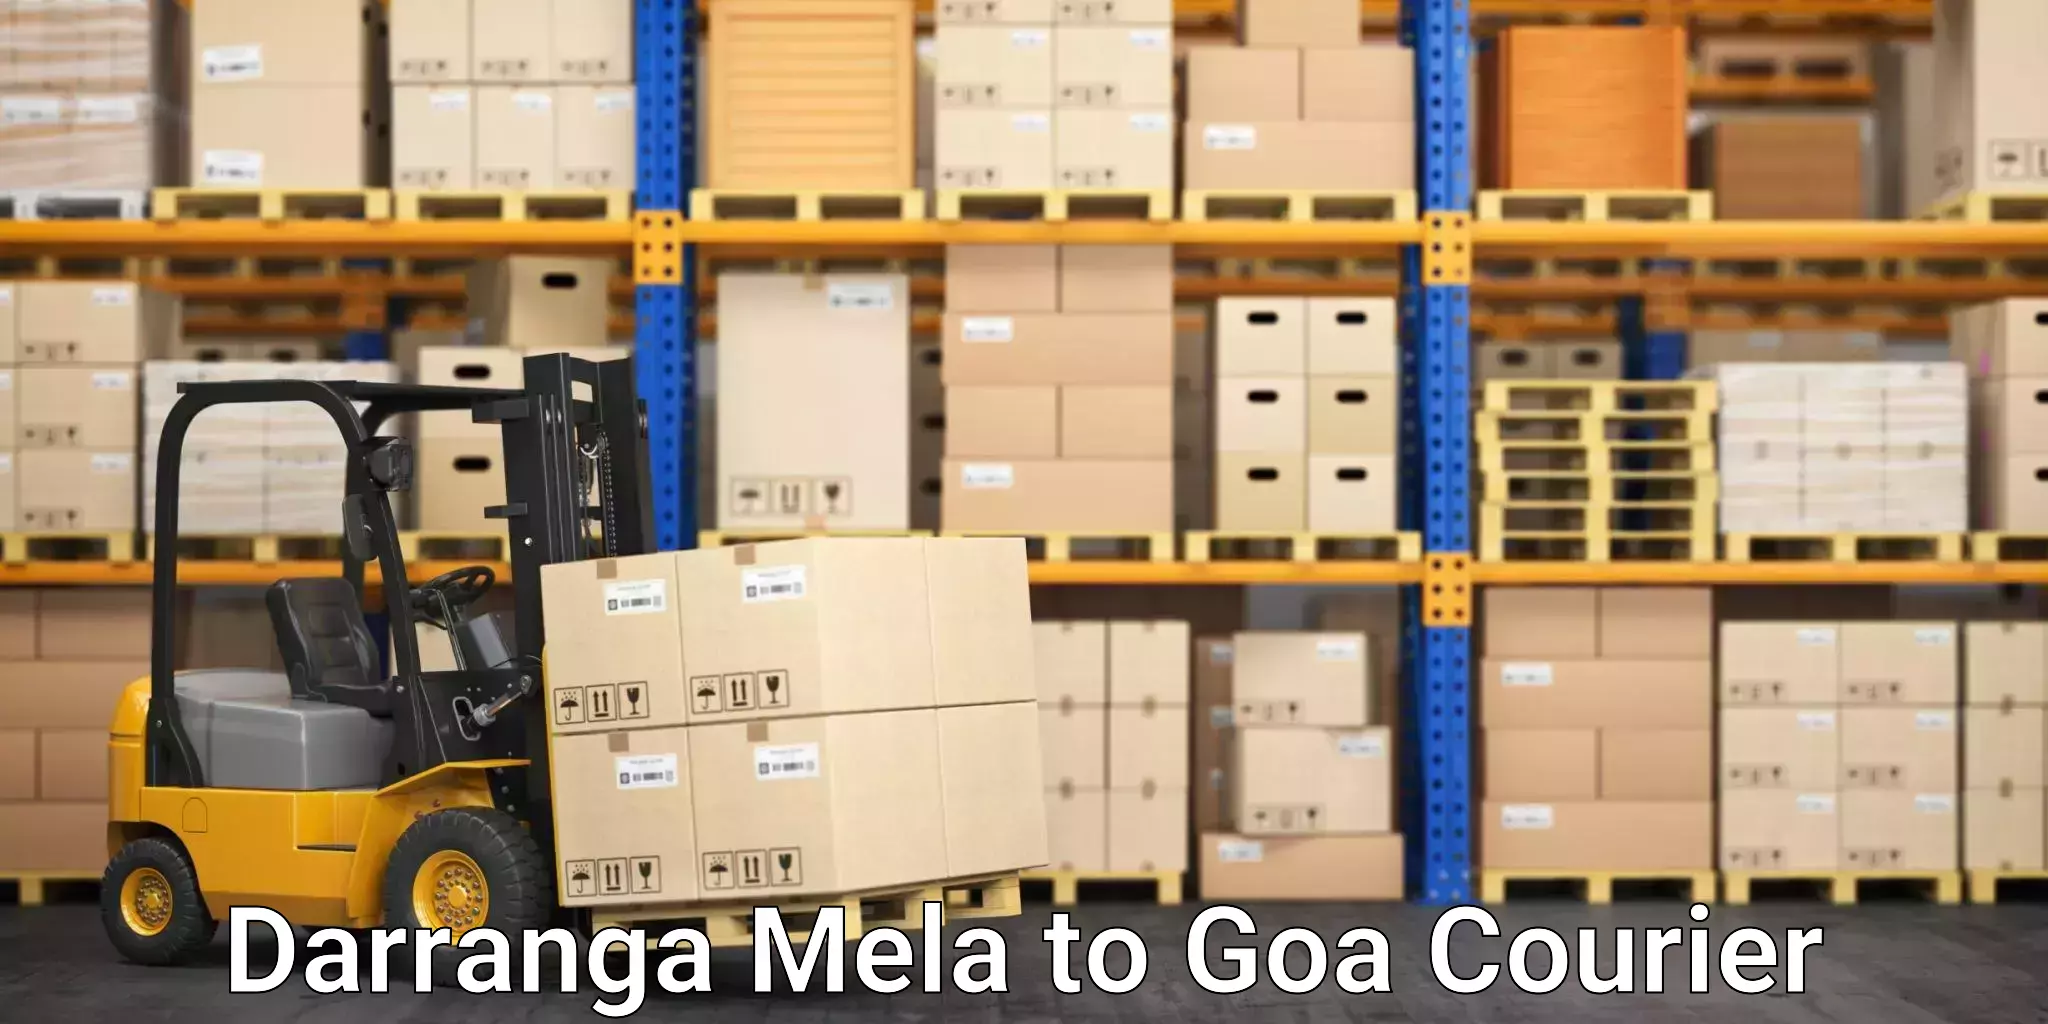 Efficient courier operations Darranga Mela to Goa